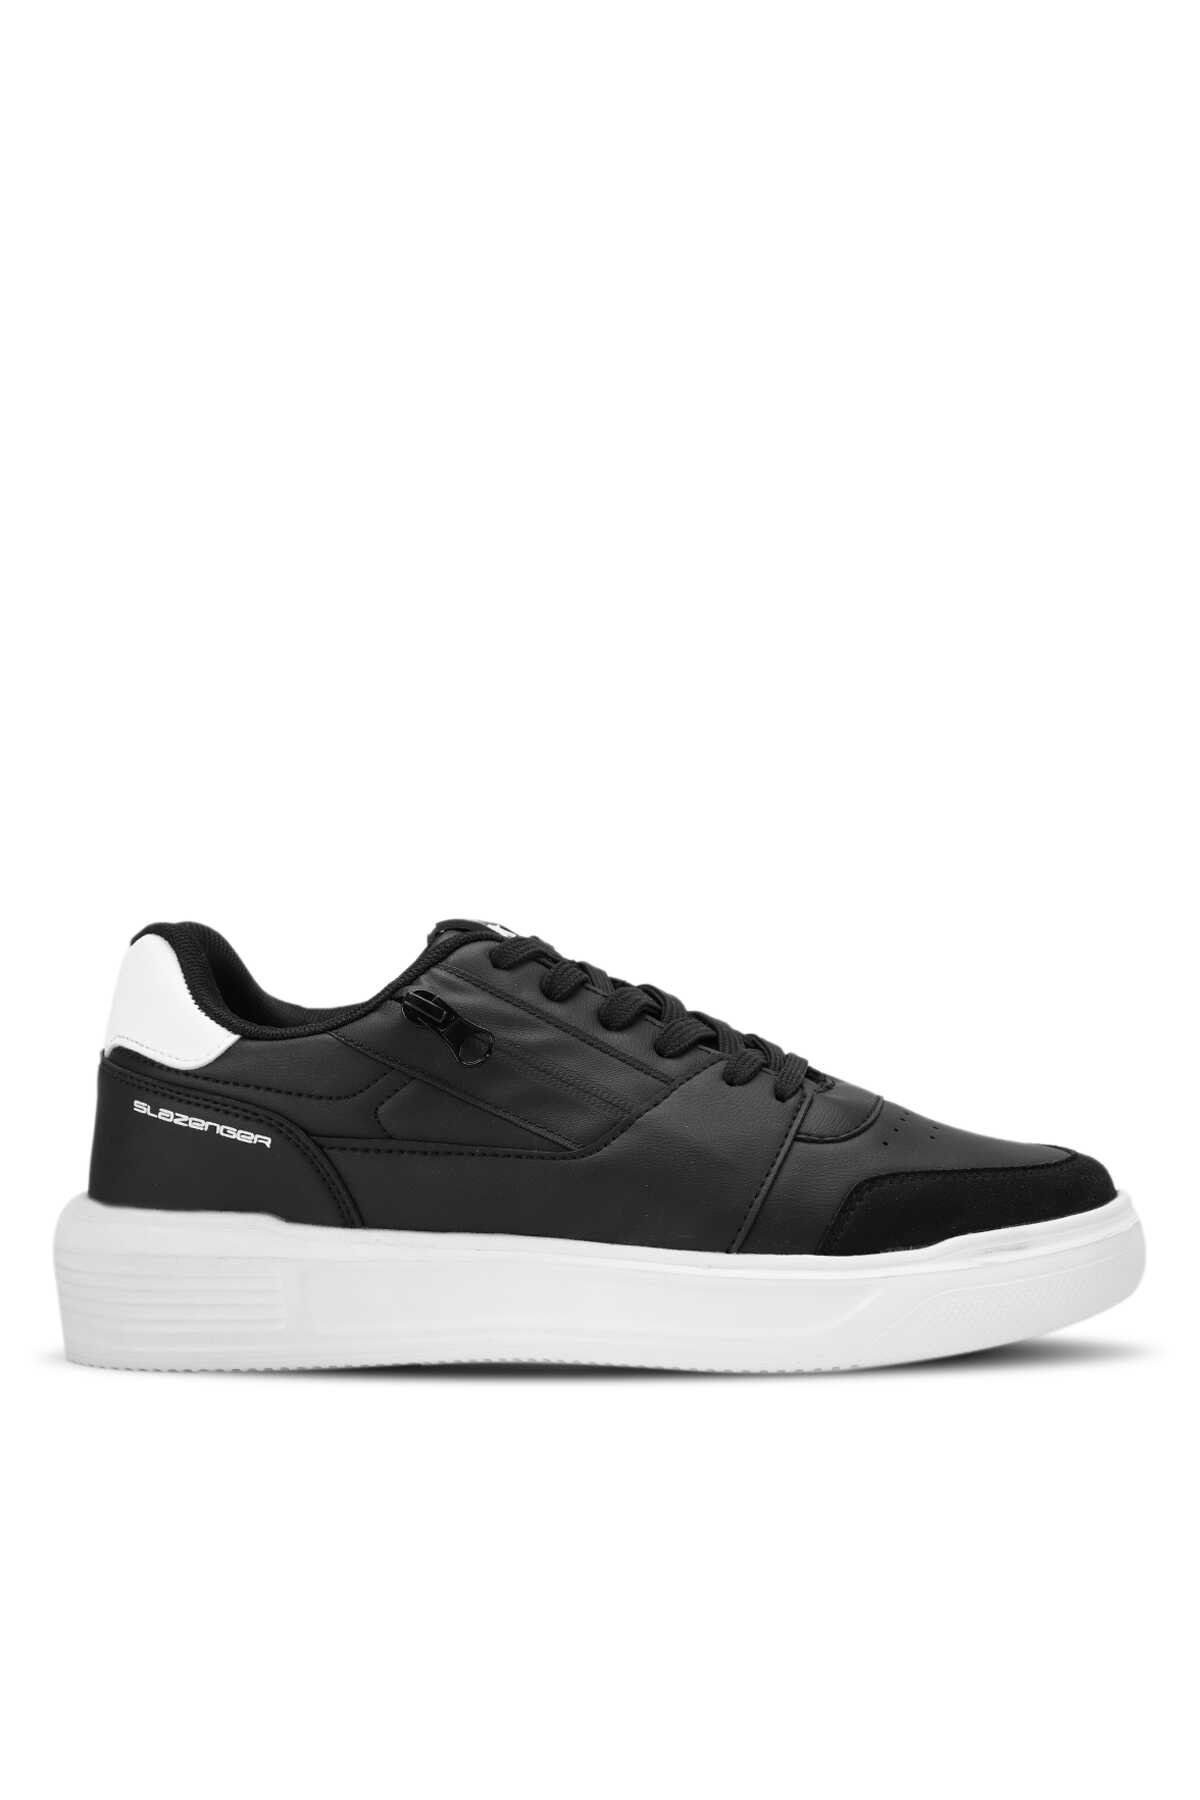 Slazenger - LABEL KTN Sneaker Erkek Ayakkabı Siyah / Beyaz